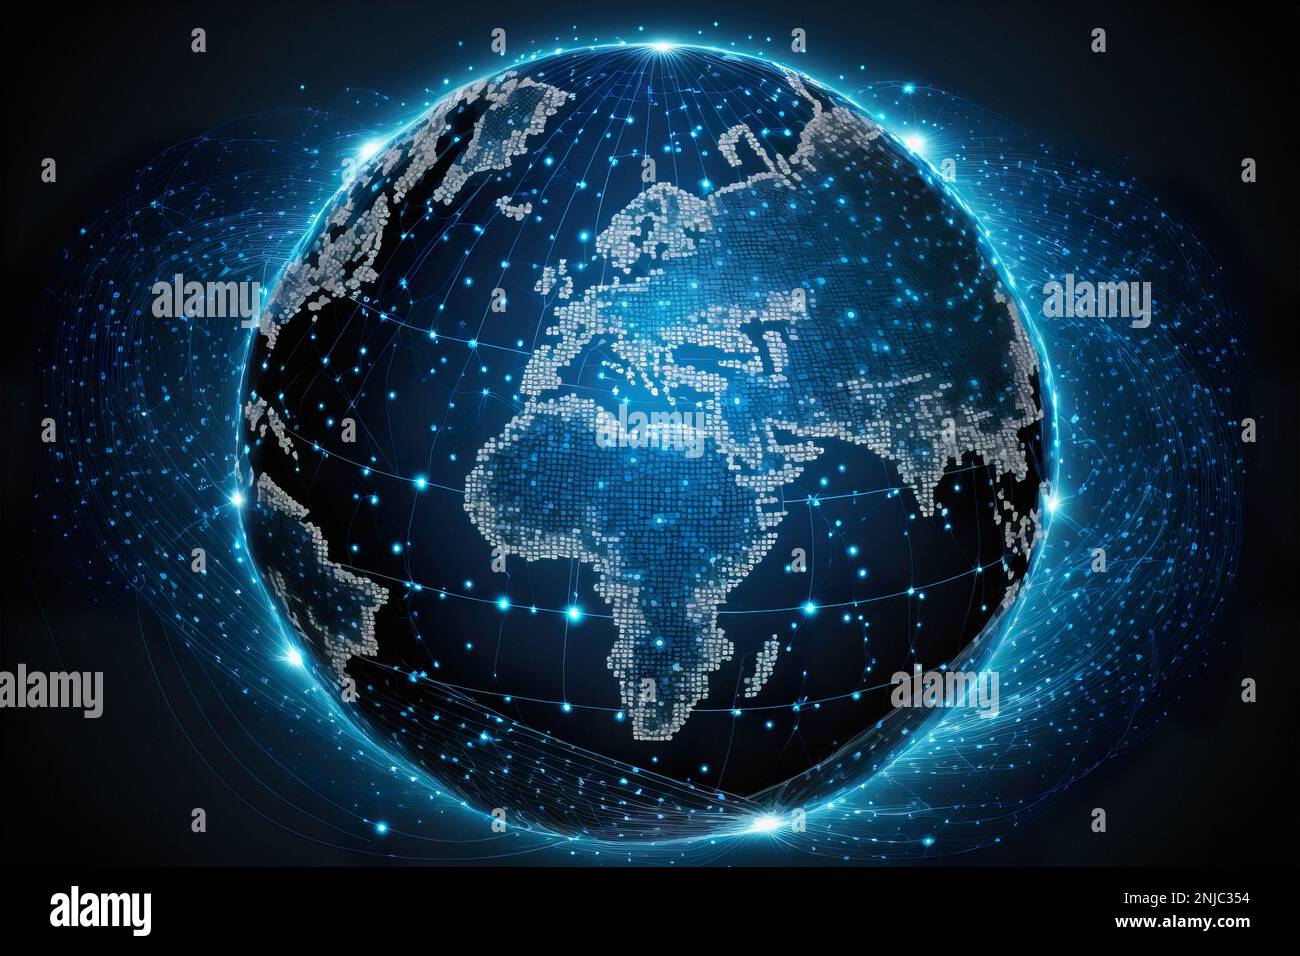 Carte de la planète. Carte du monde. Réseau social mondial. Futur. Fond bleu futuriste avec planète Terre. Internet et technologie. Bleu flottant Banque D'Images